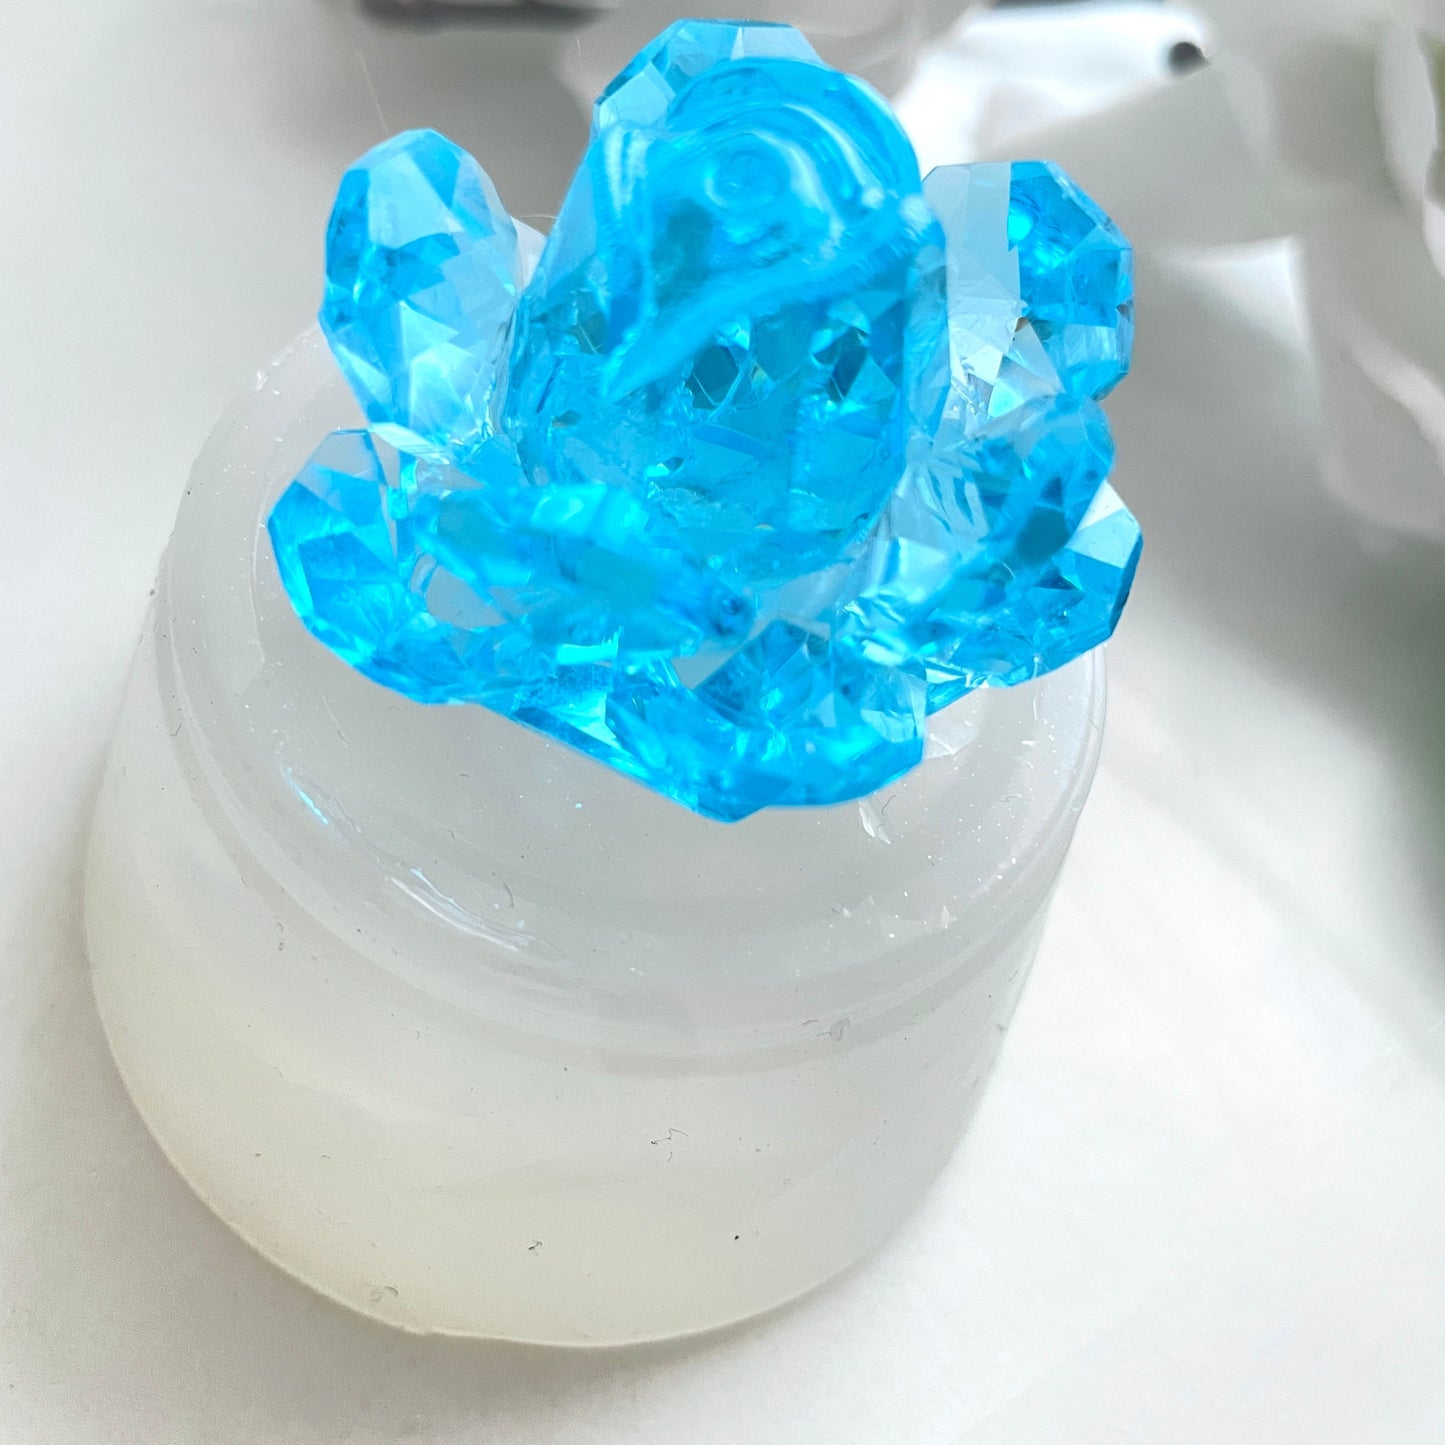 Сверкающая элегантность: силиконовая форма Crystal Rose для потрясающих творений